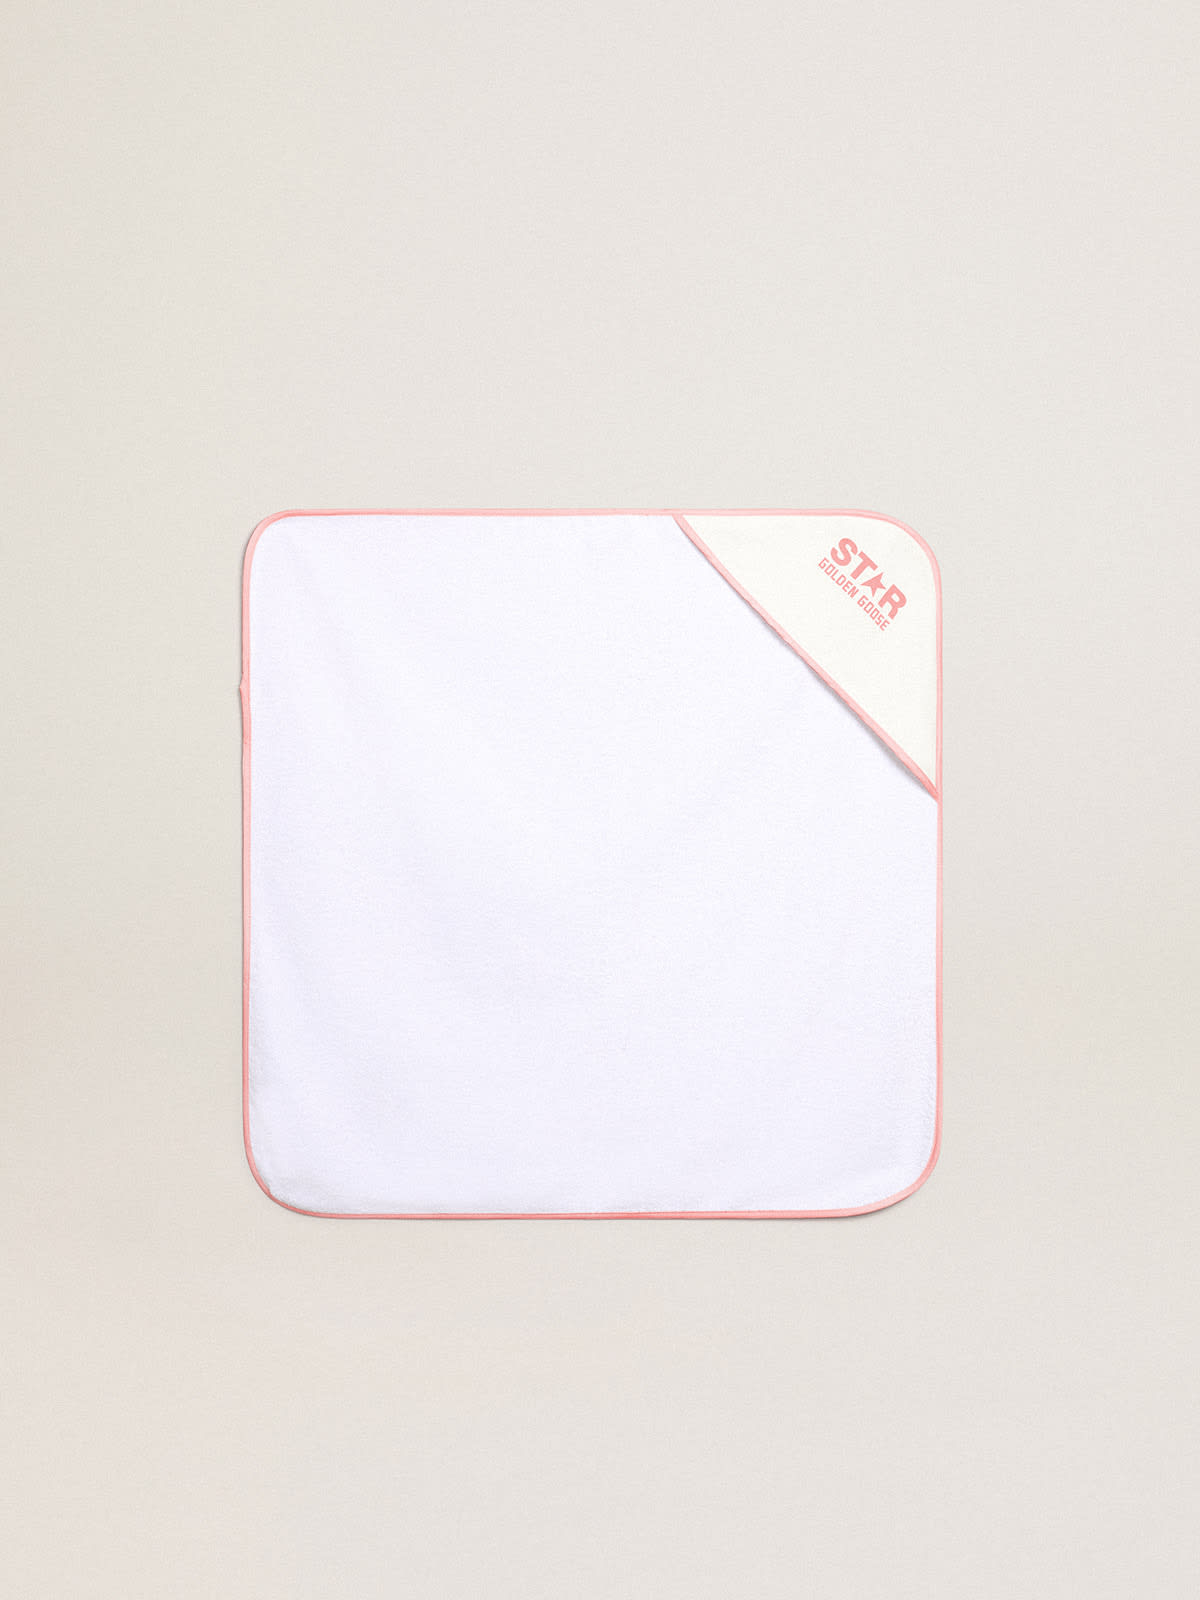 Golden Goose - Caixa de presente com jogo para banho Coleção Star nas cores branco e branco leite com acabamentos e logo rosa em contraste in 